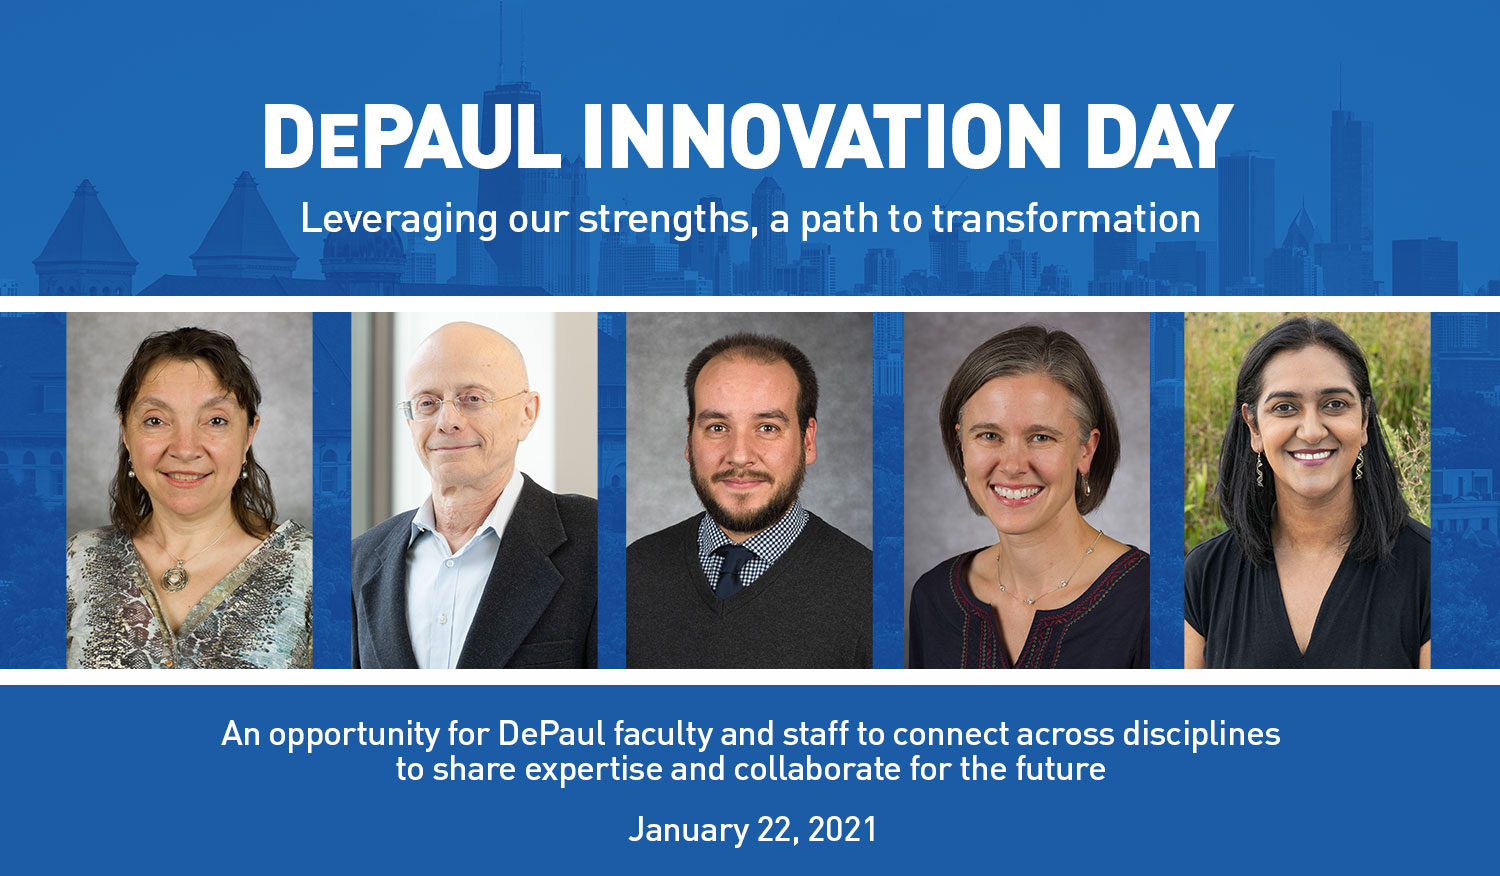 DePaul Innovation Day